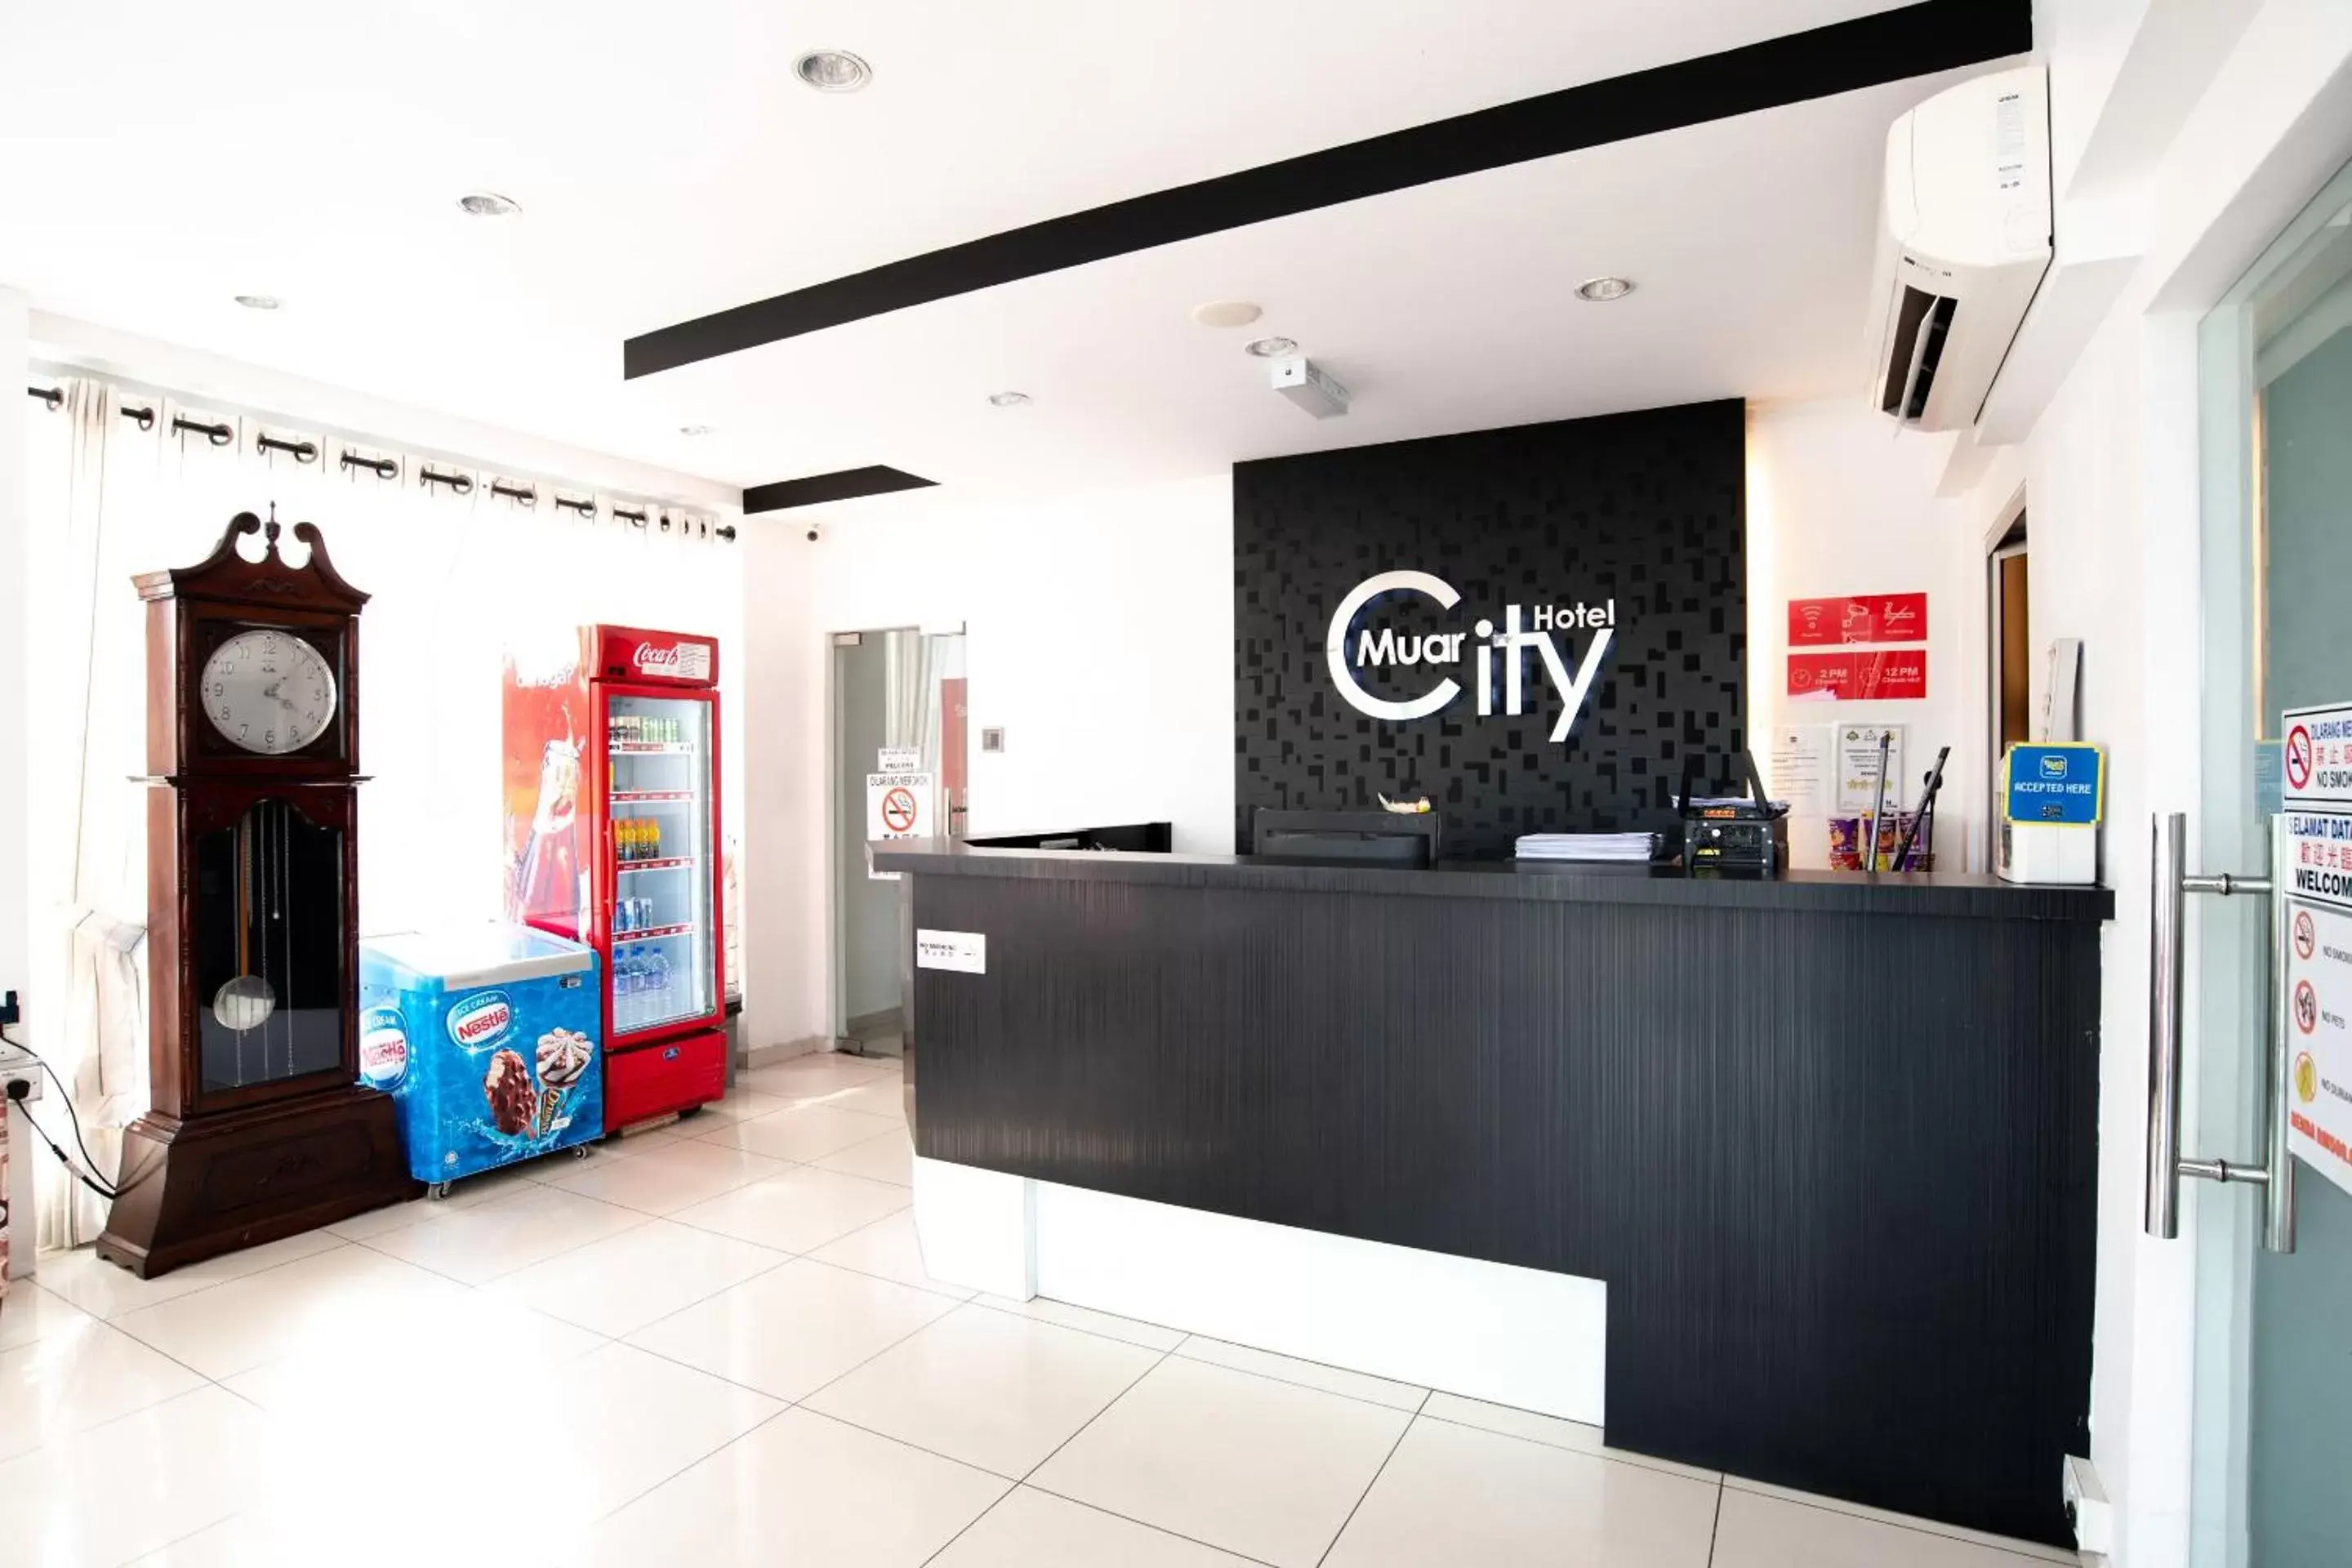 Lobby or reception, Lobby/Reception in OYO 756 Muar City Hotel